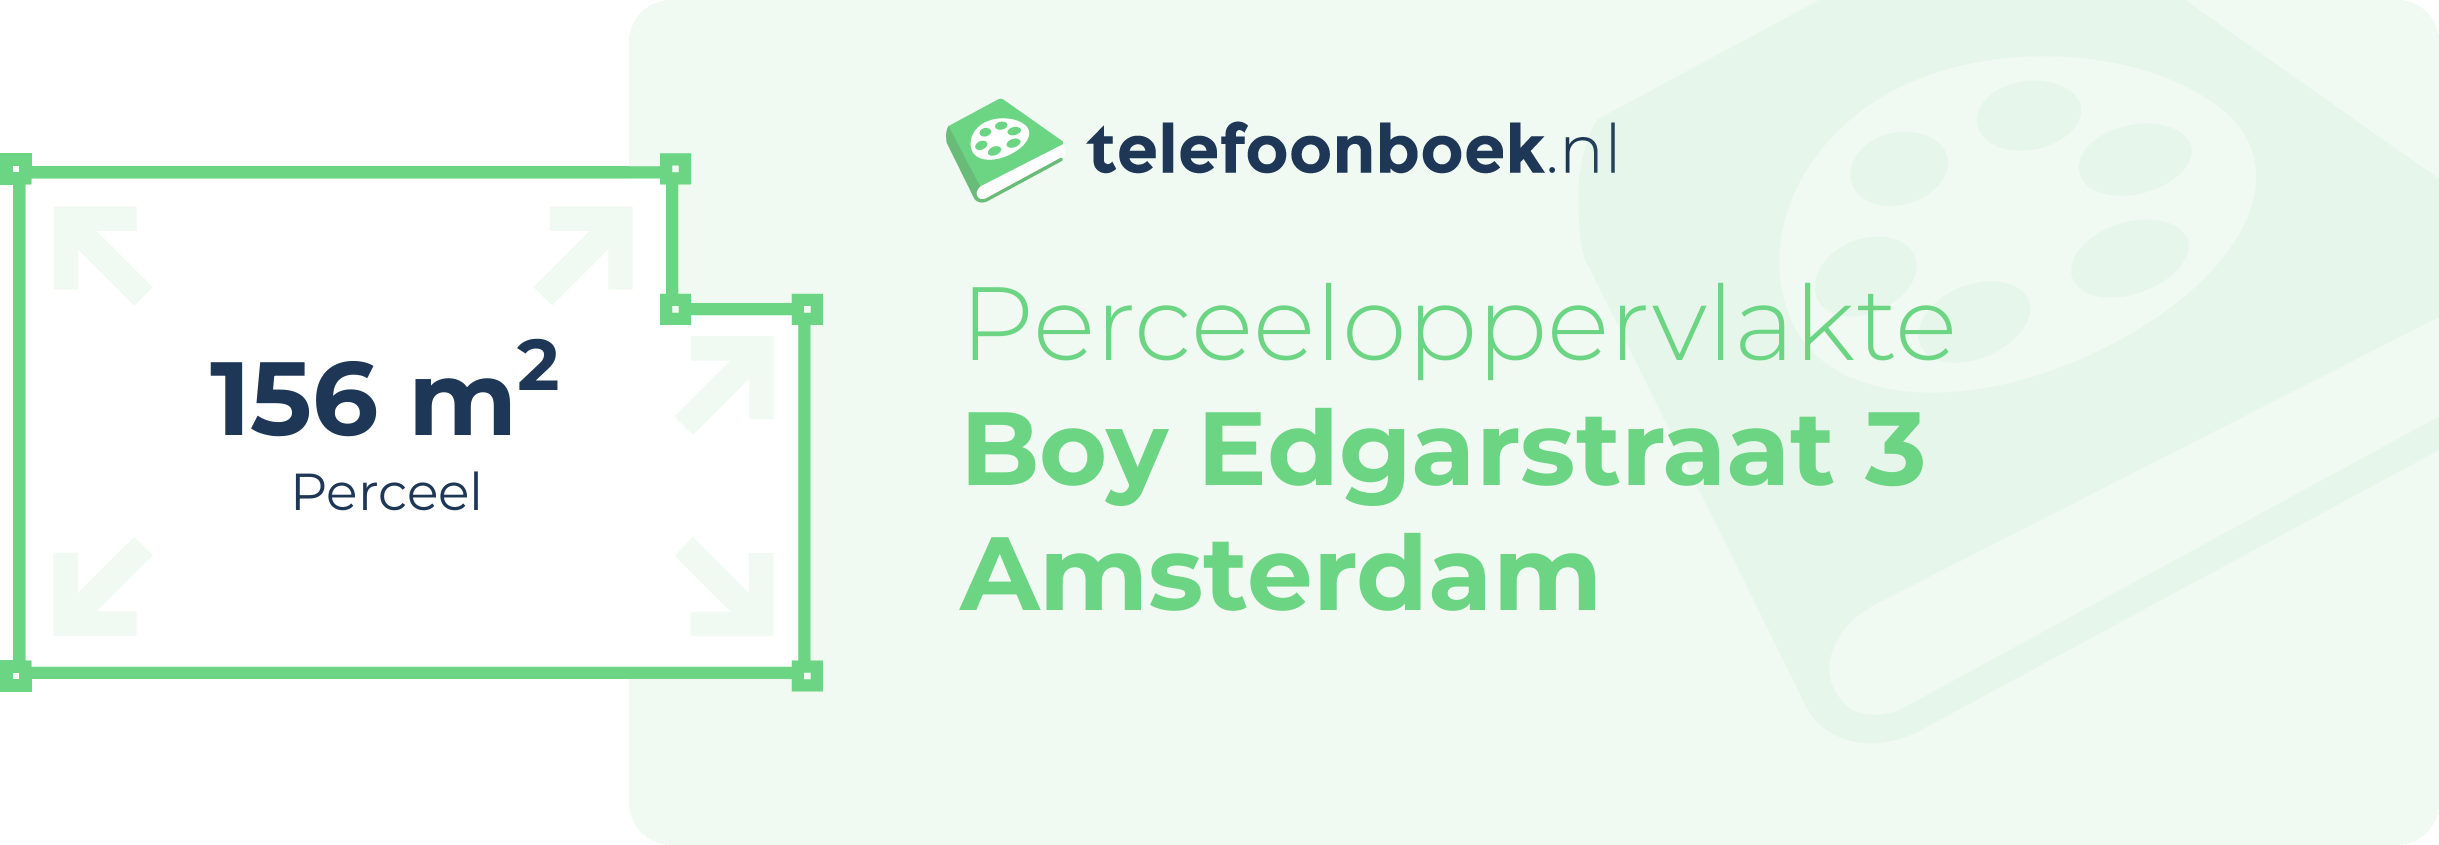 Perceeloppervlakte Boy Edgarstraat 3 Amsterdam